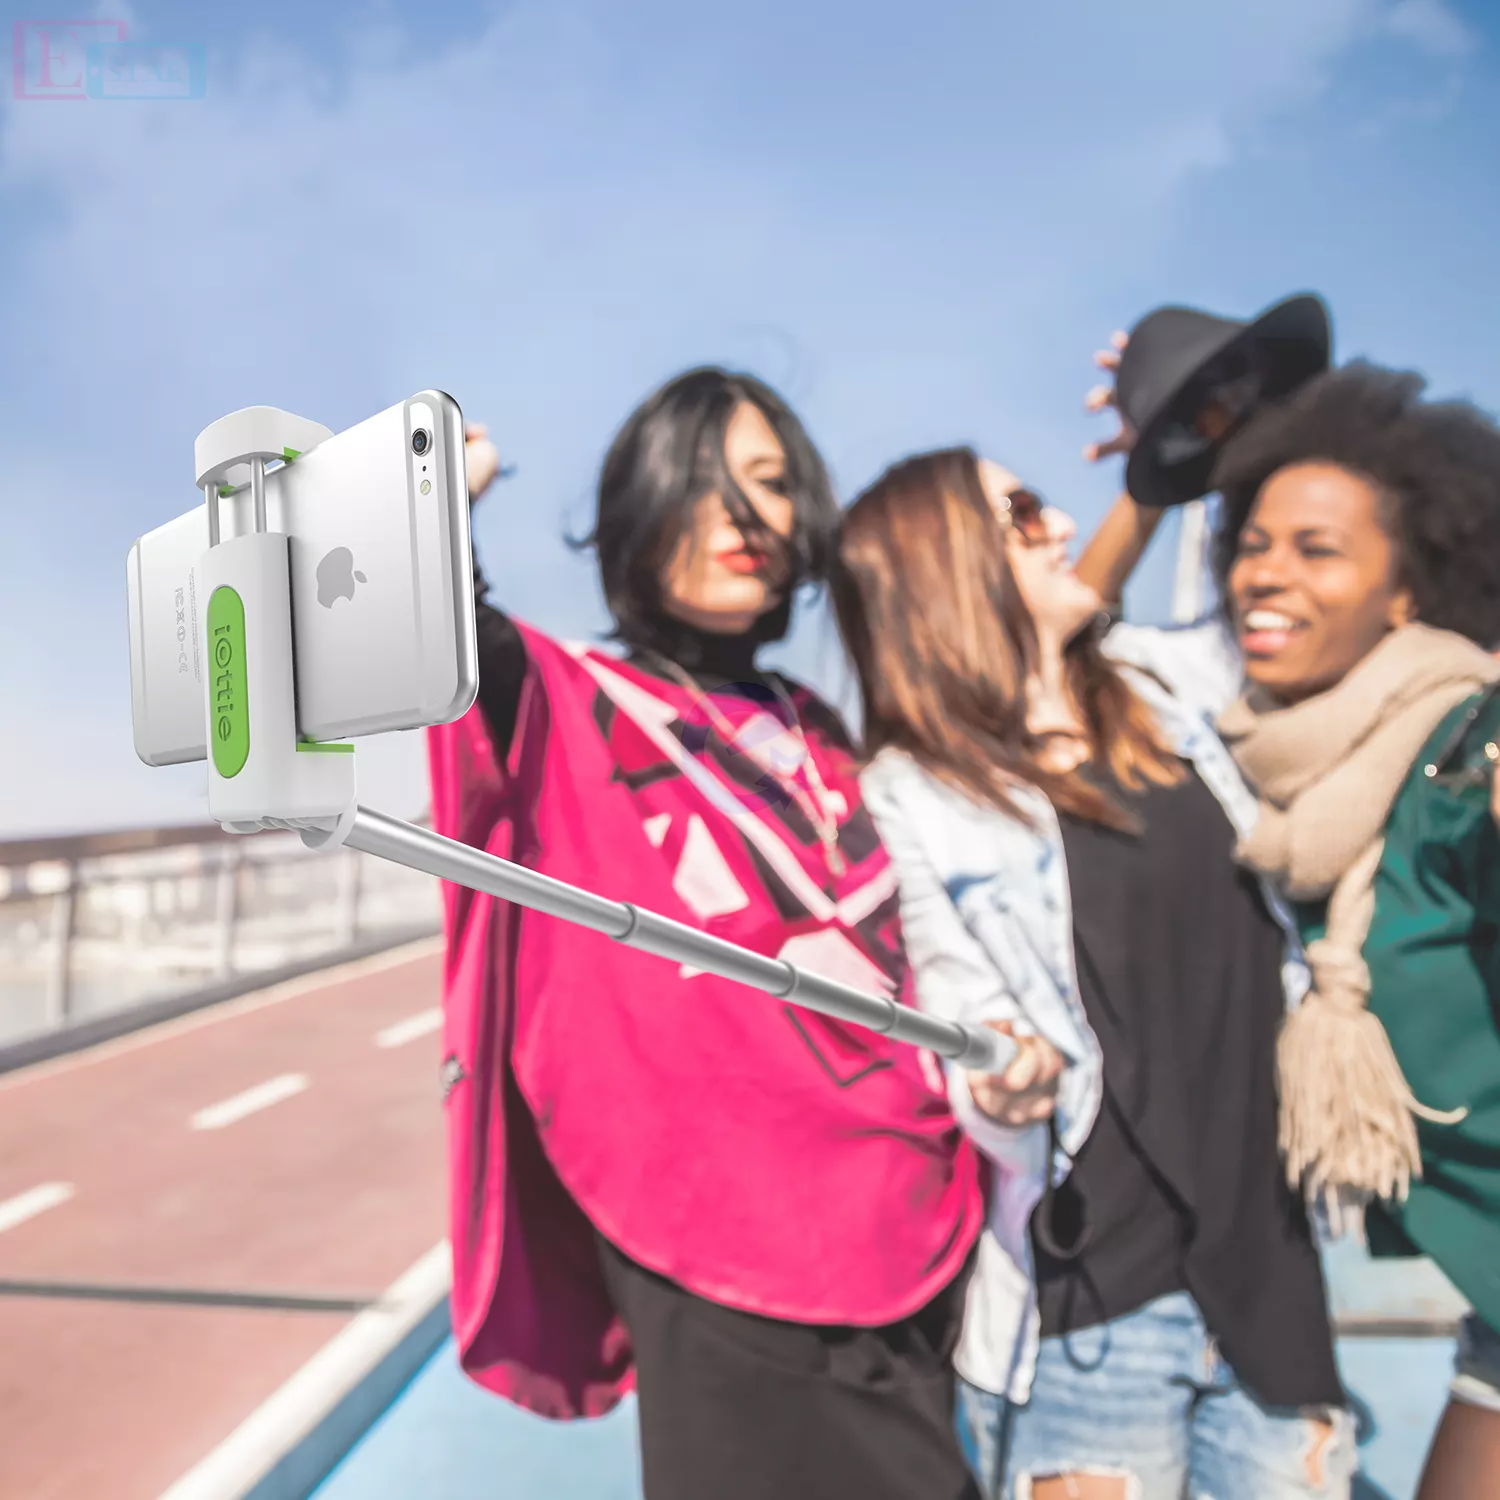 Оригинальная селфи палка iOttie MiGo Selfie Stick, GoPro Pole для Apple iPhone и смартфонов Black (Черный) HLMPIO110BK